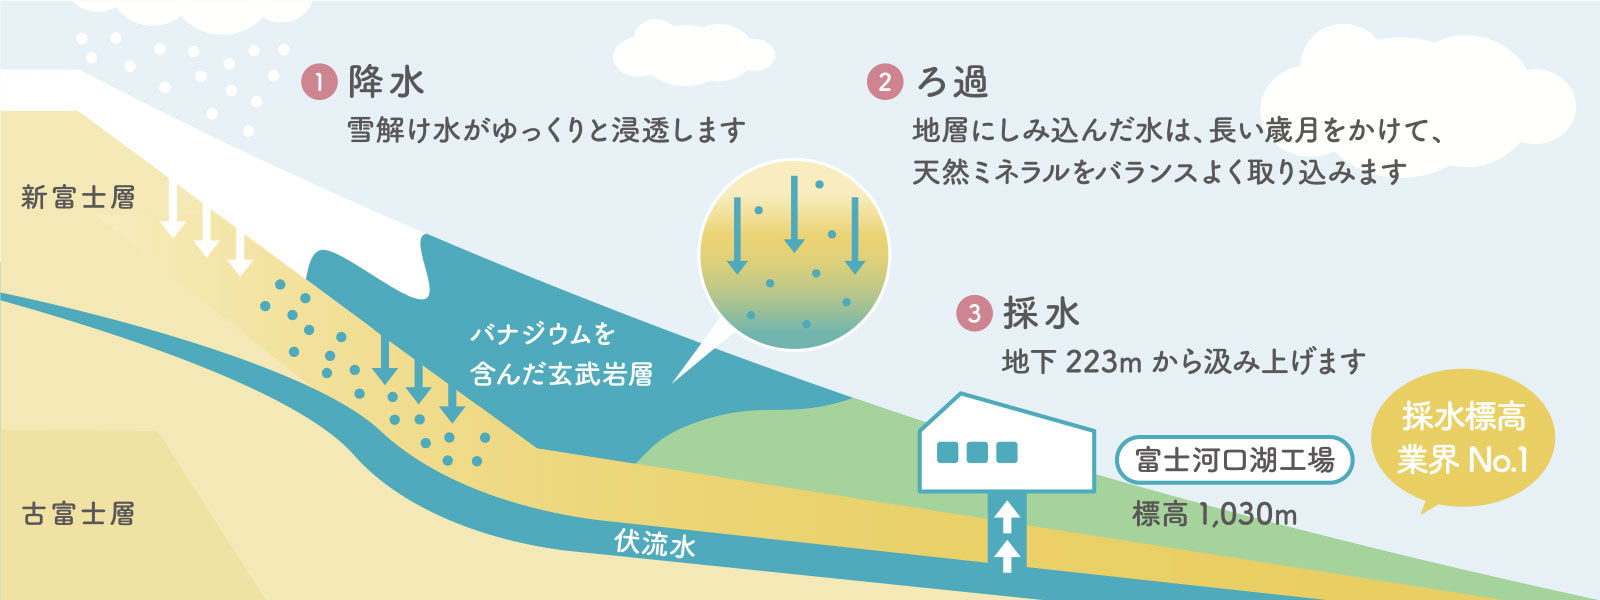 シリカとバナジウムを含むおいしい富士山の天然水をウォーターサーバーで